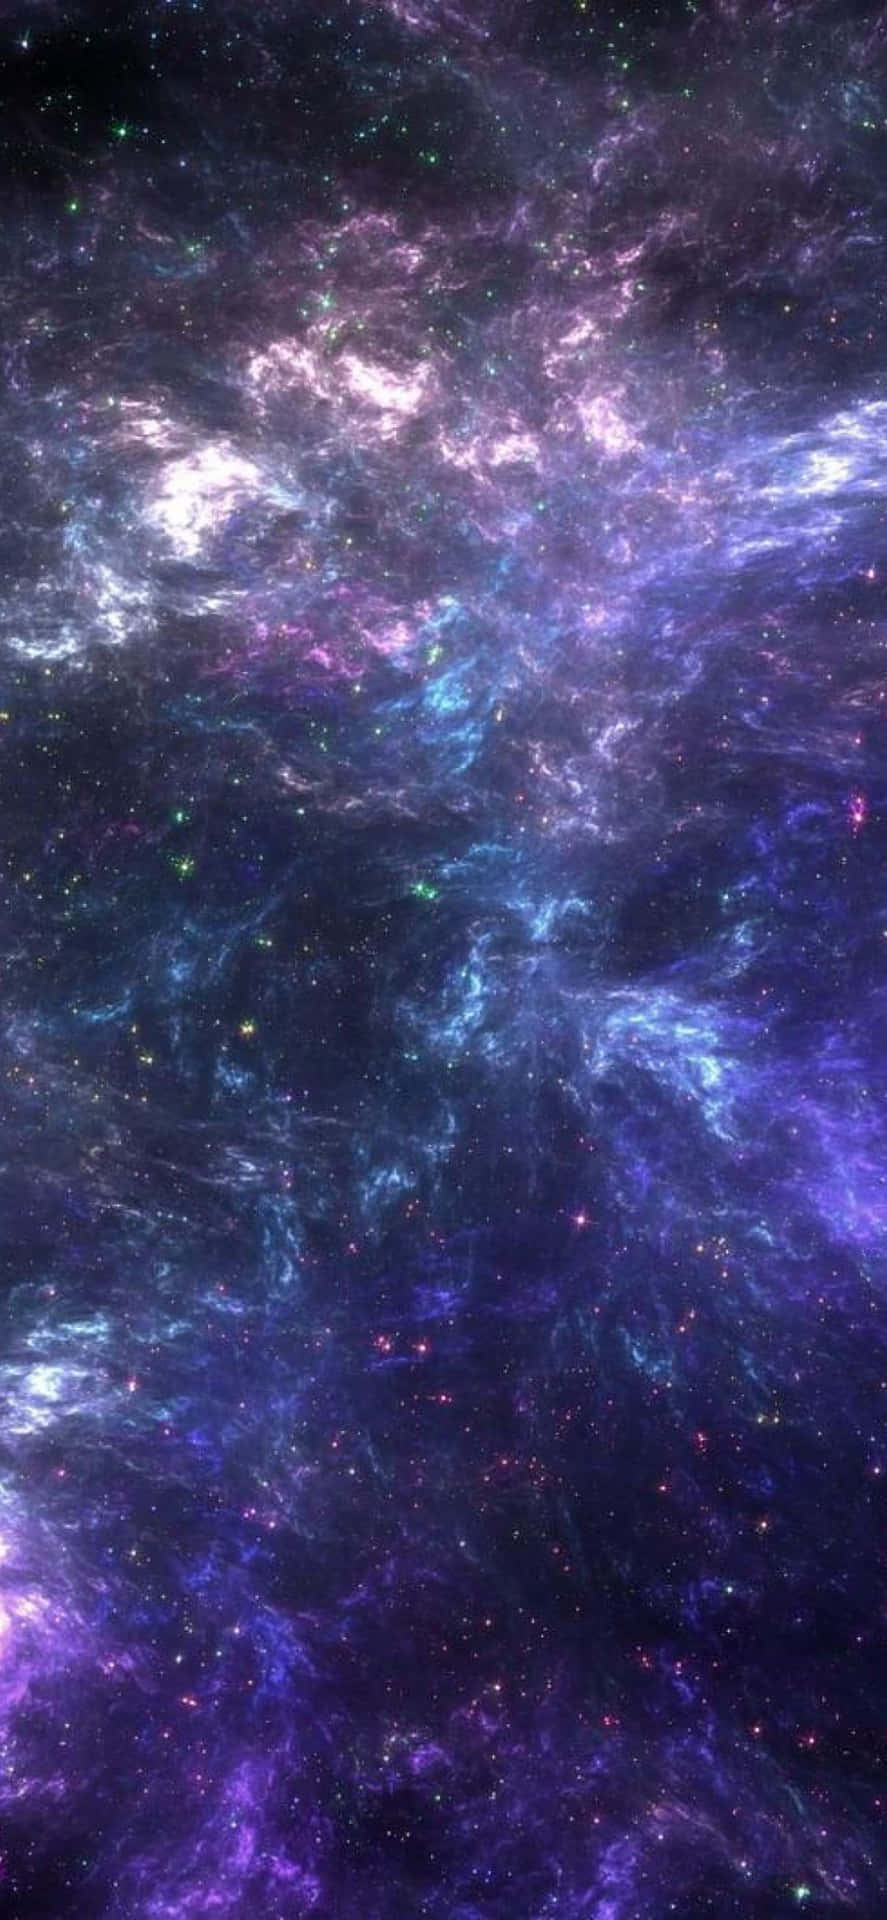 Dieschönheit Der Intergalaktischen Erforschung Liegt In Den Unendlichen Möglichkeiten, Die Durch Das Blue Galaxy Iphone Repräsentiert Werden. Wallpaper